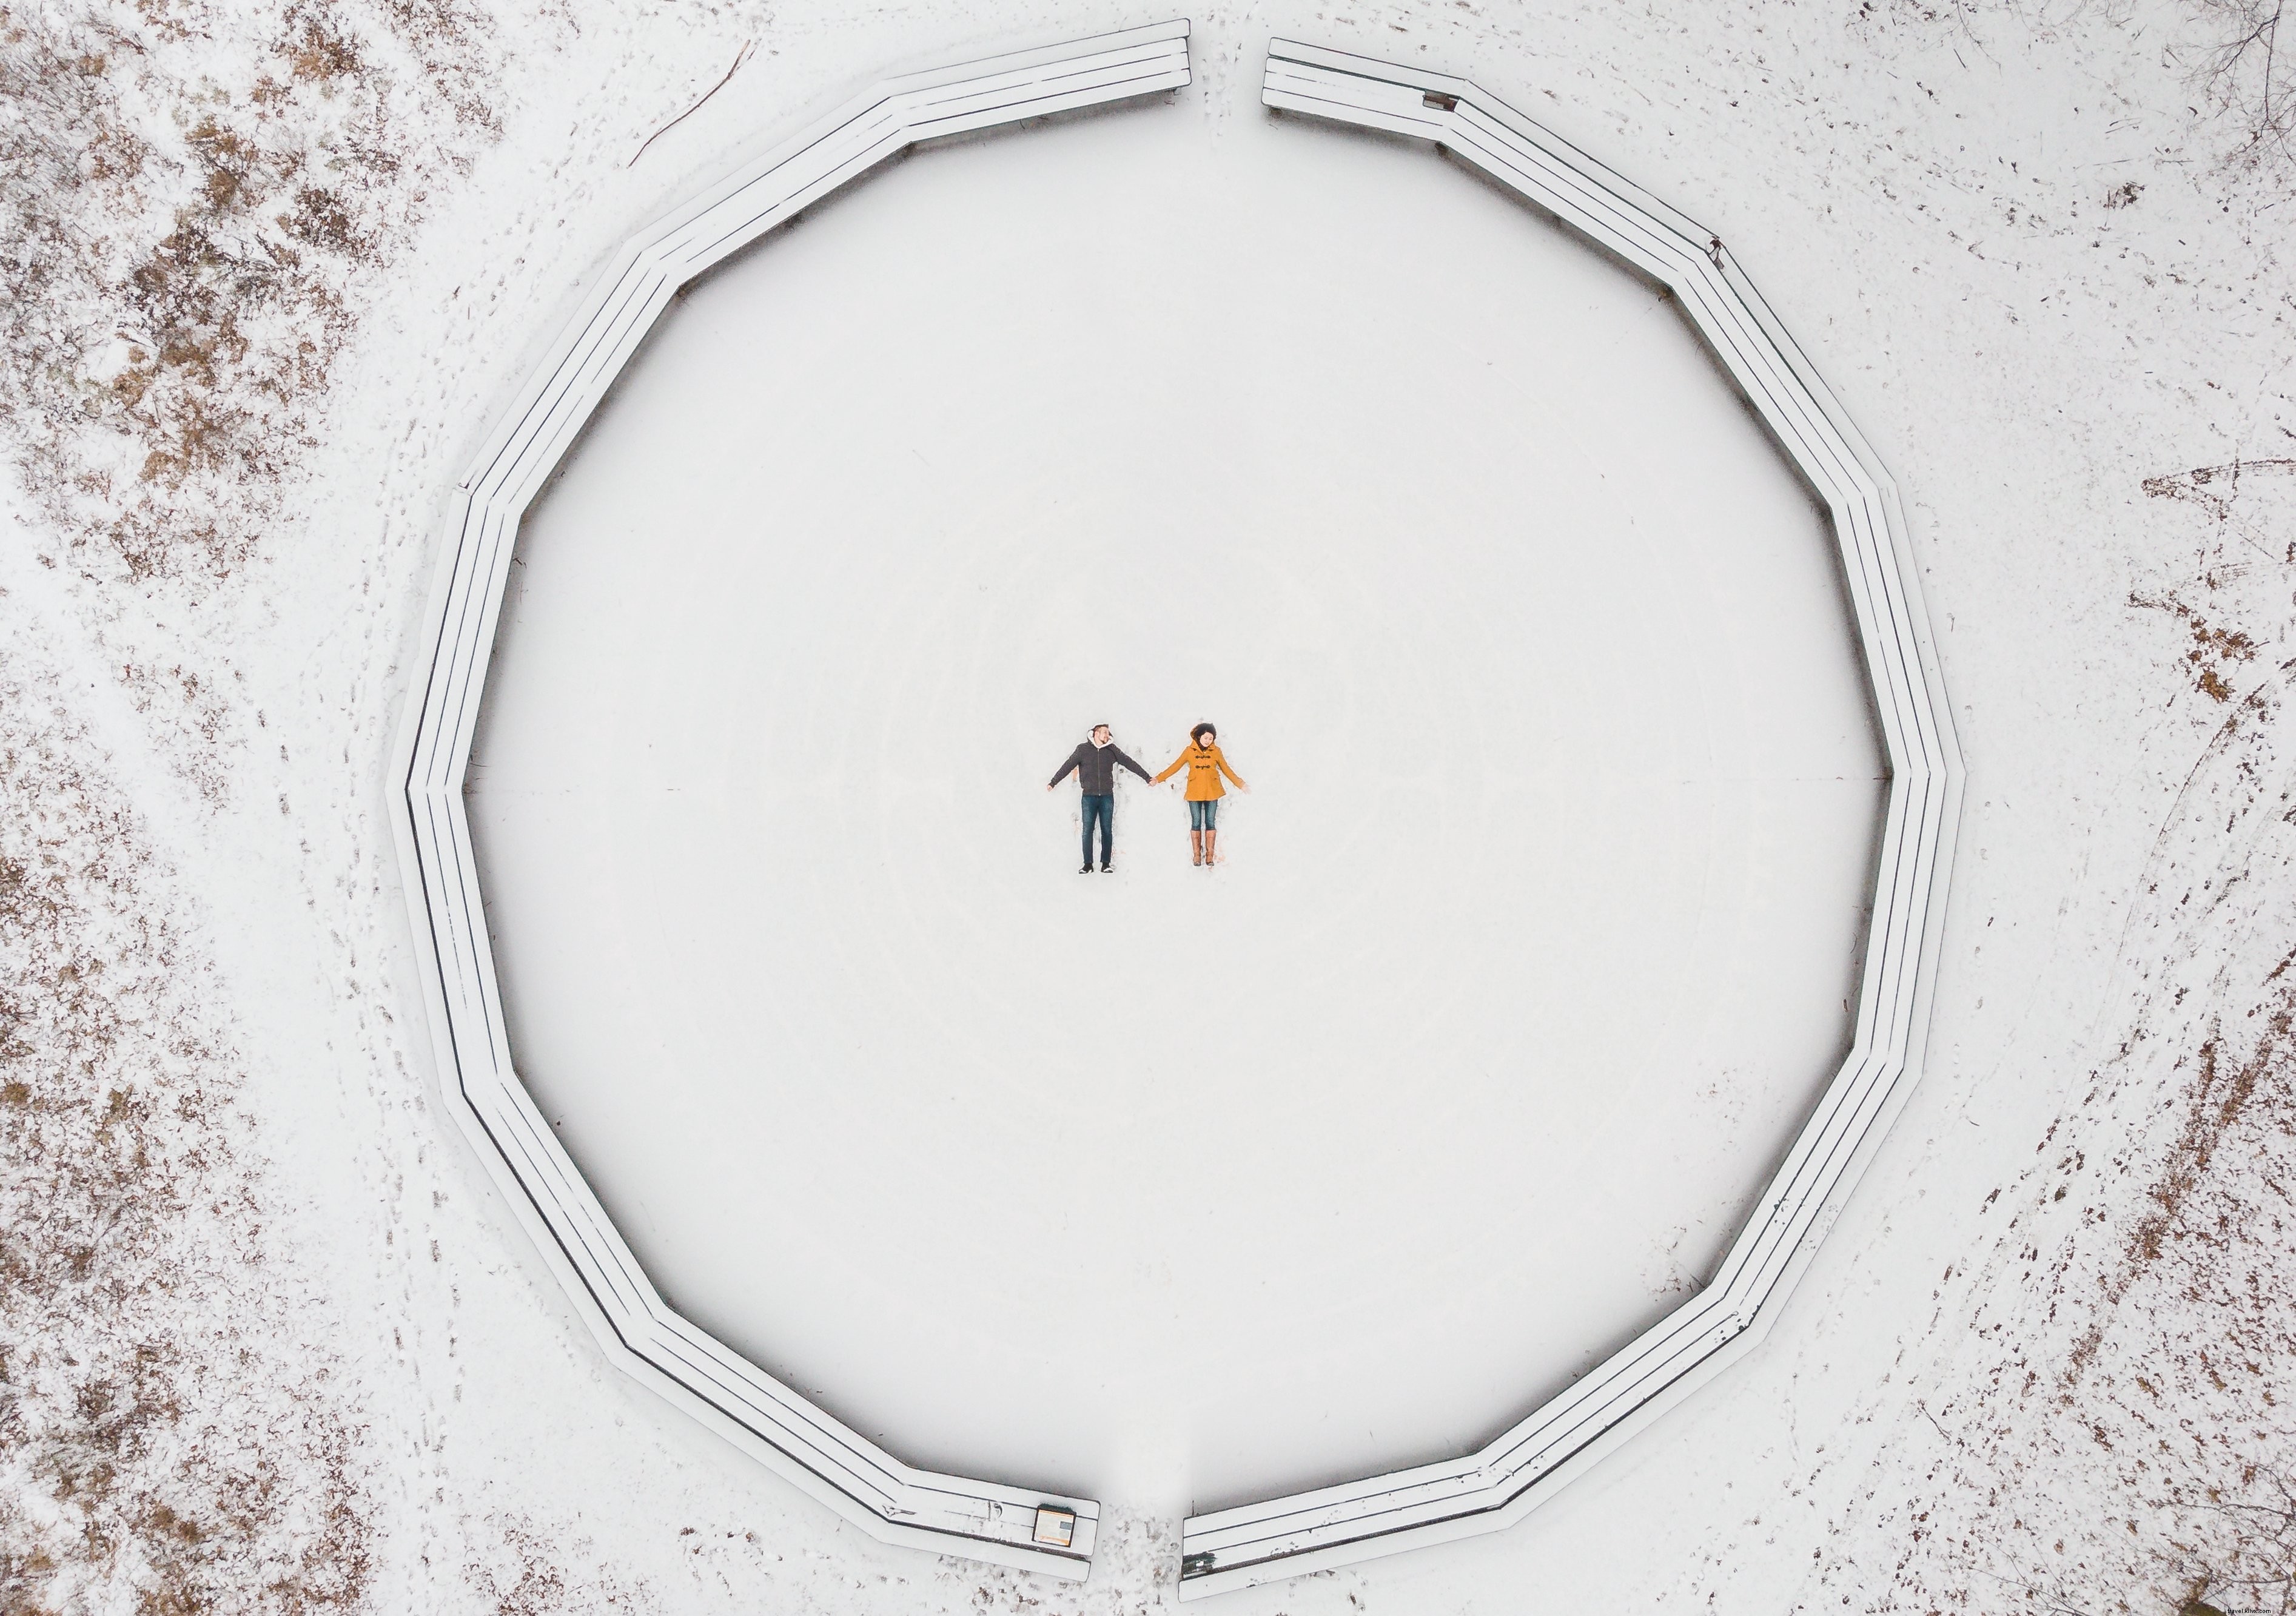 Vista aérea de um casal fazendo foto dos anjos da neve